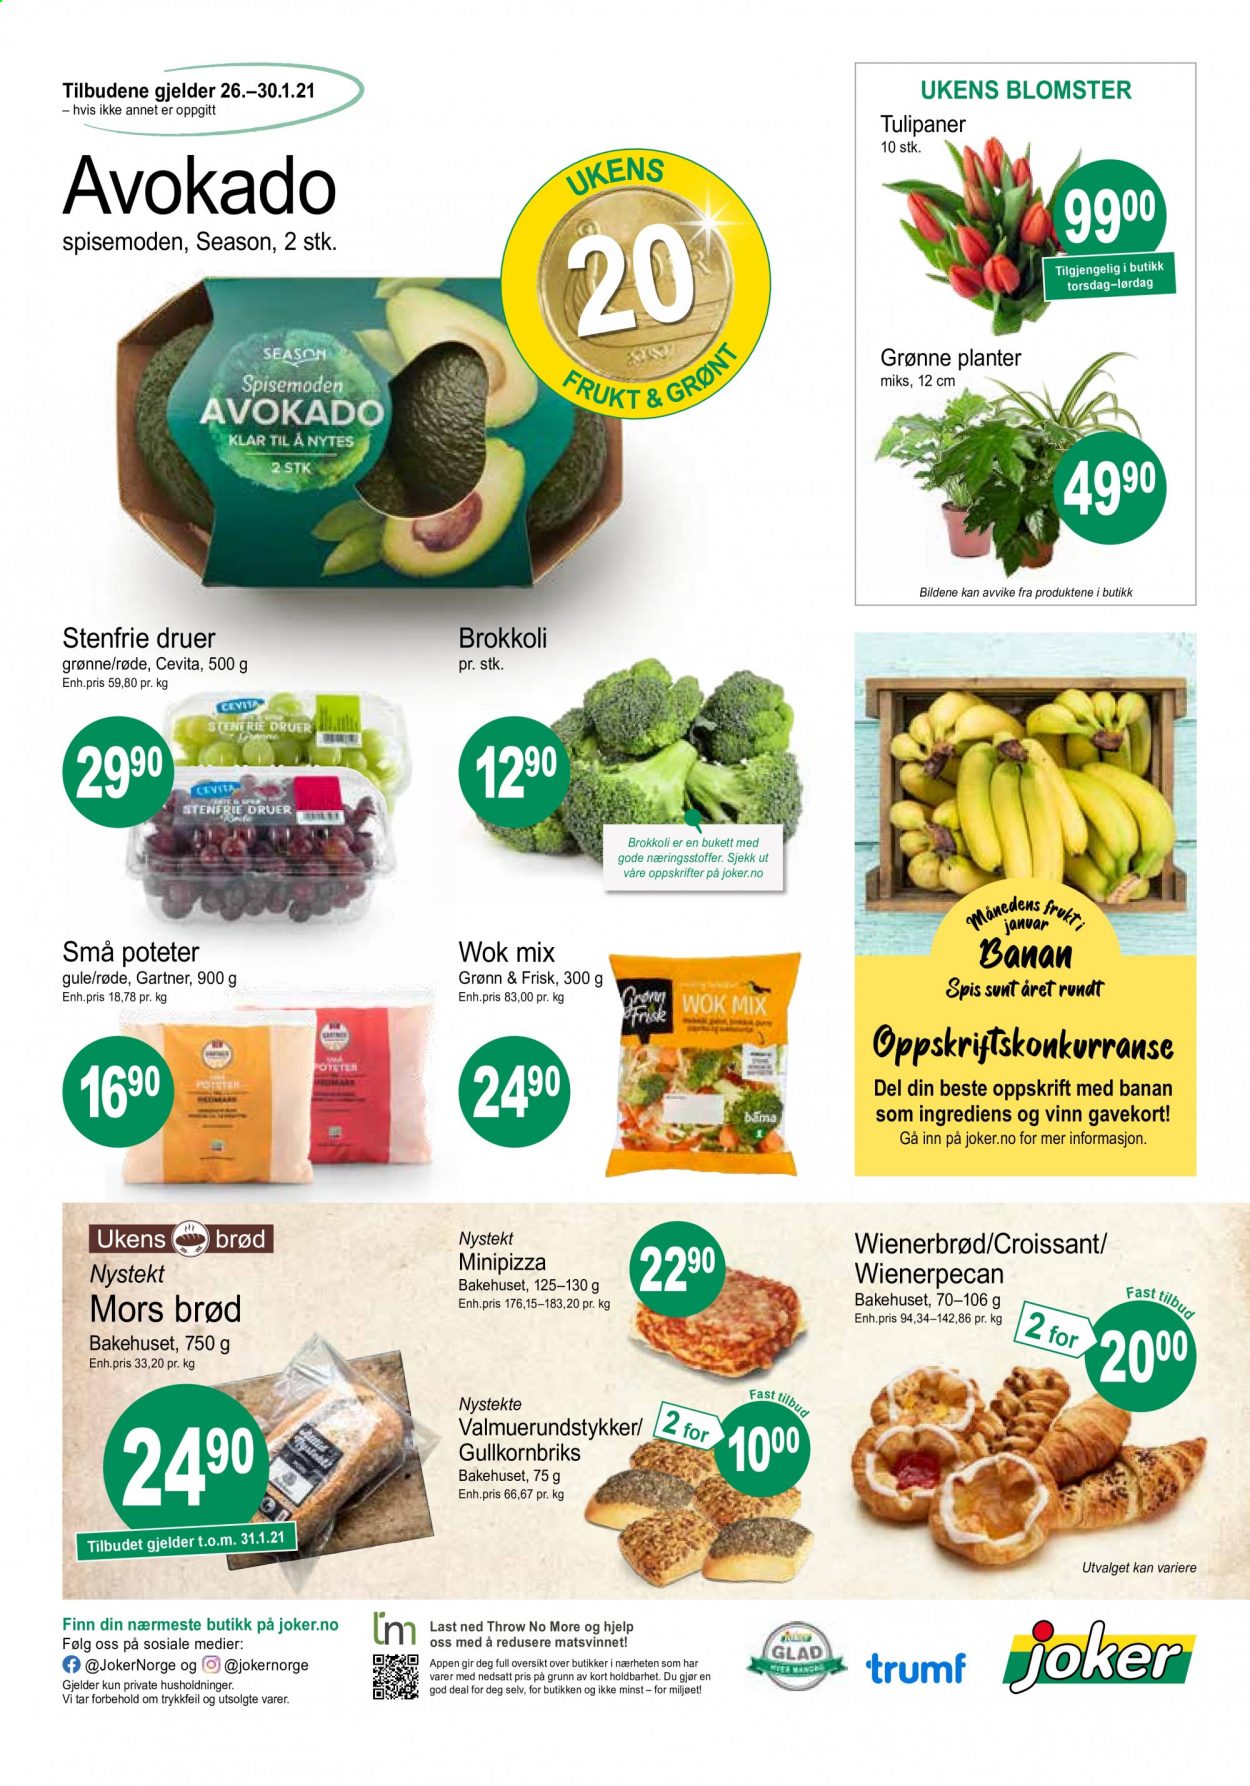 thumbnail - Kundeavis Joker - 26.1.2021 - 30.1.2021 - Produkter fra tilbudsaviser - druer, avokado, brød, croissants, planter, blomster. Side 4.